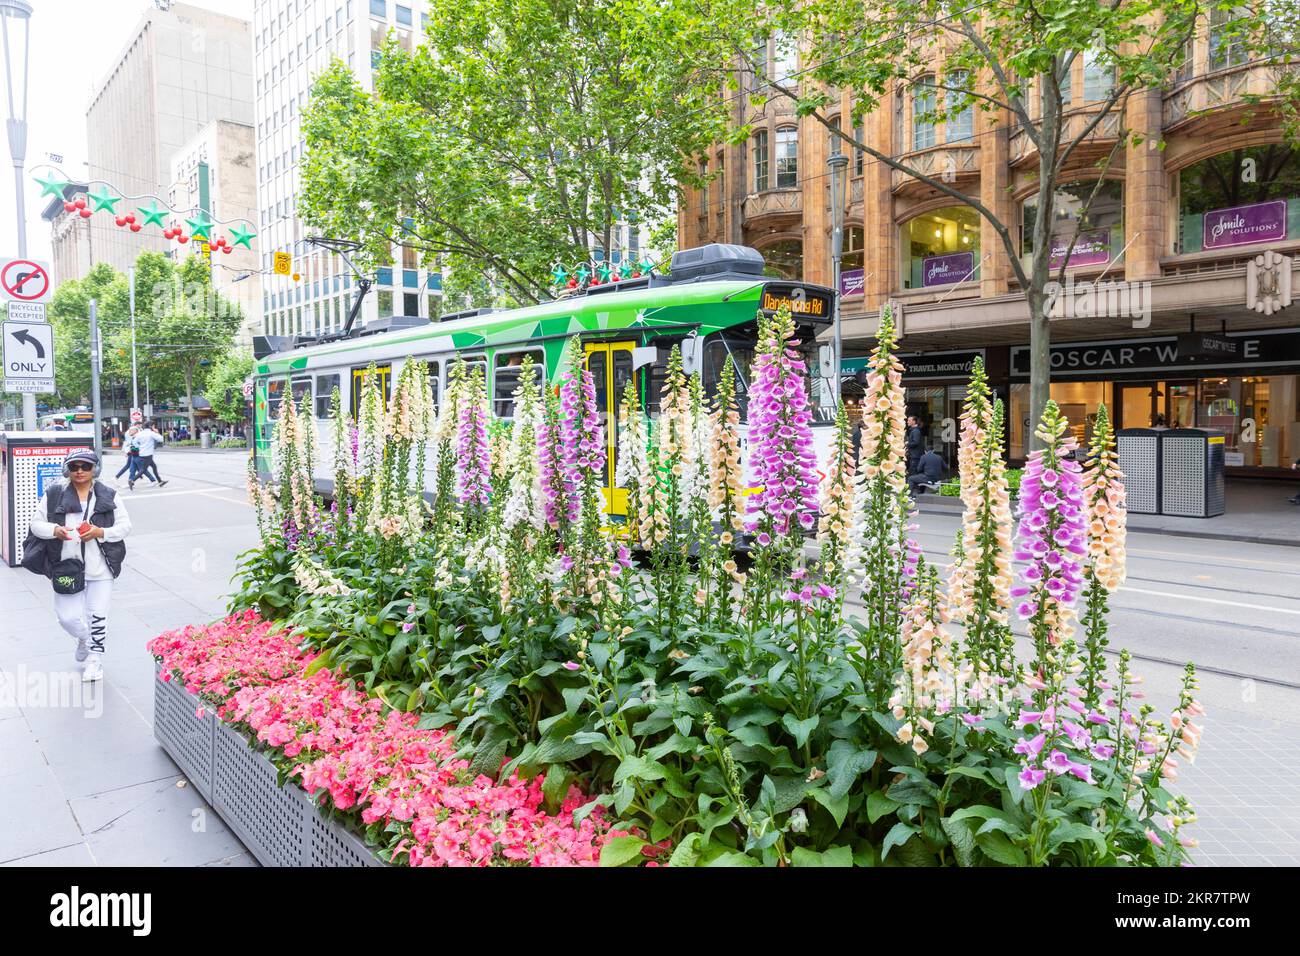 Foxgloves Digitalis et d'autres vivaces fleurissent à Melbourne Vic en dehors de l'hôtel de ville de Melbourne avec passage du tram, Melbourne, Australie printemps 2022 Banque D'Images